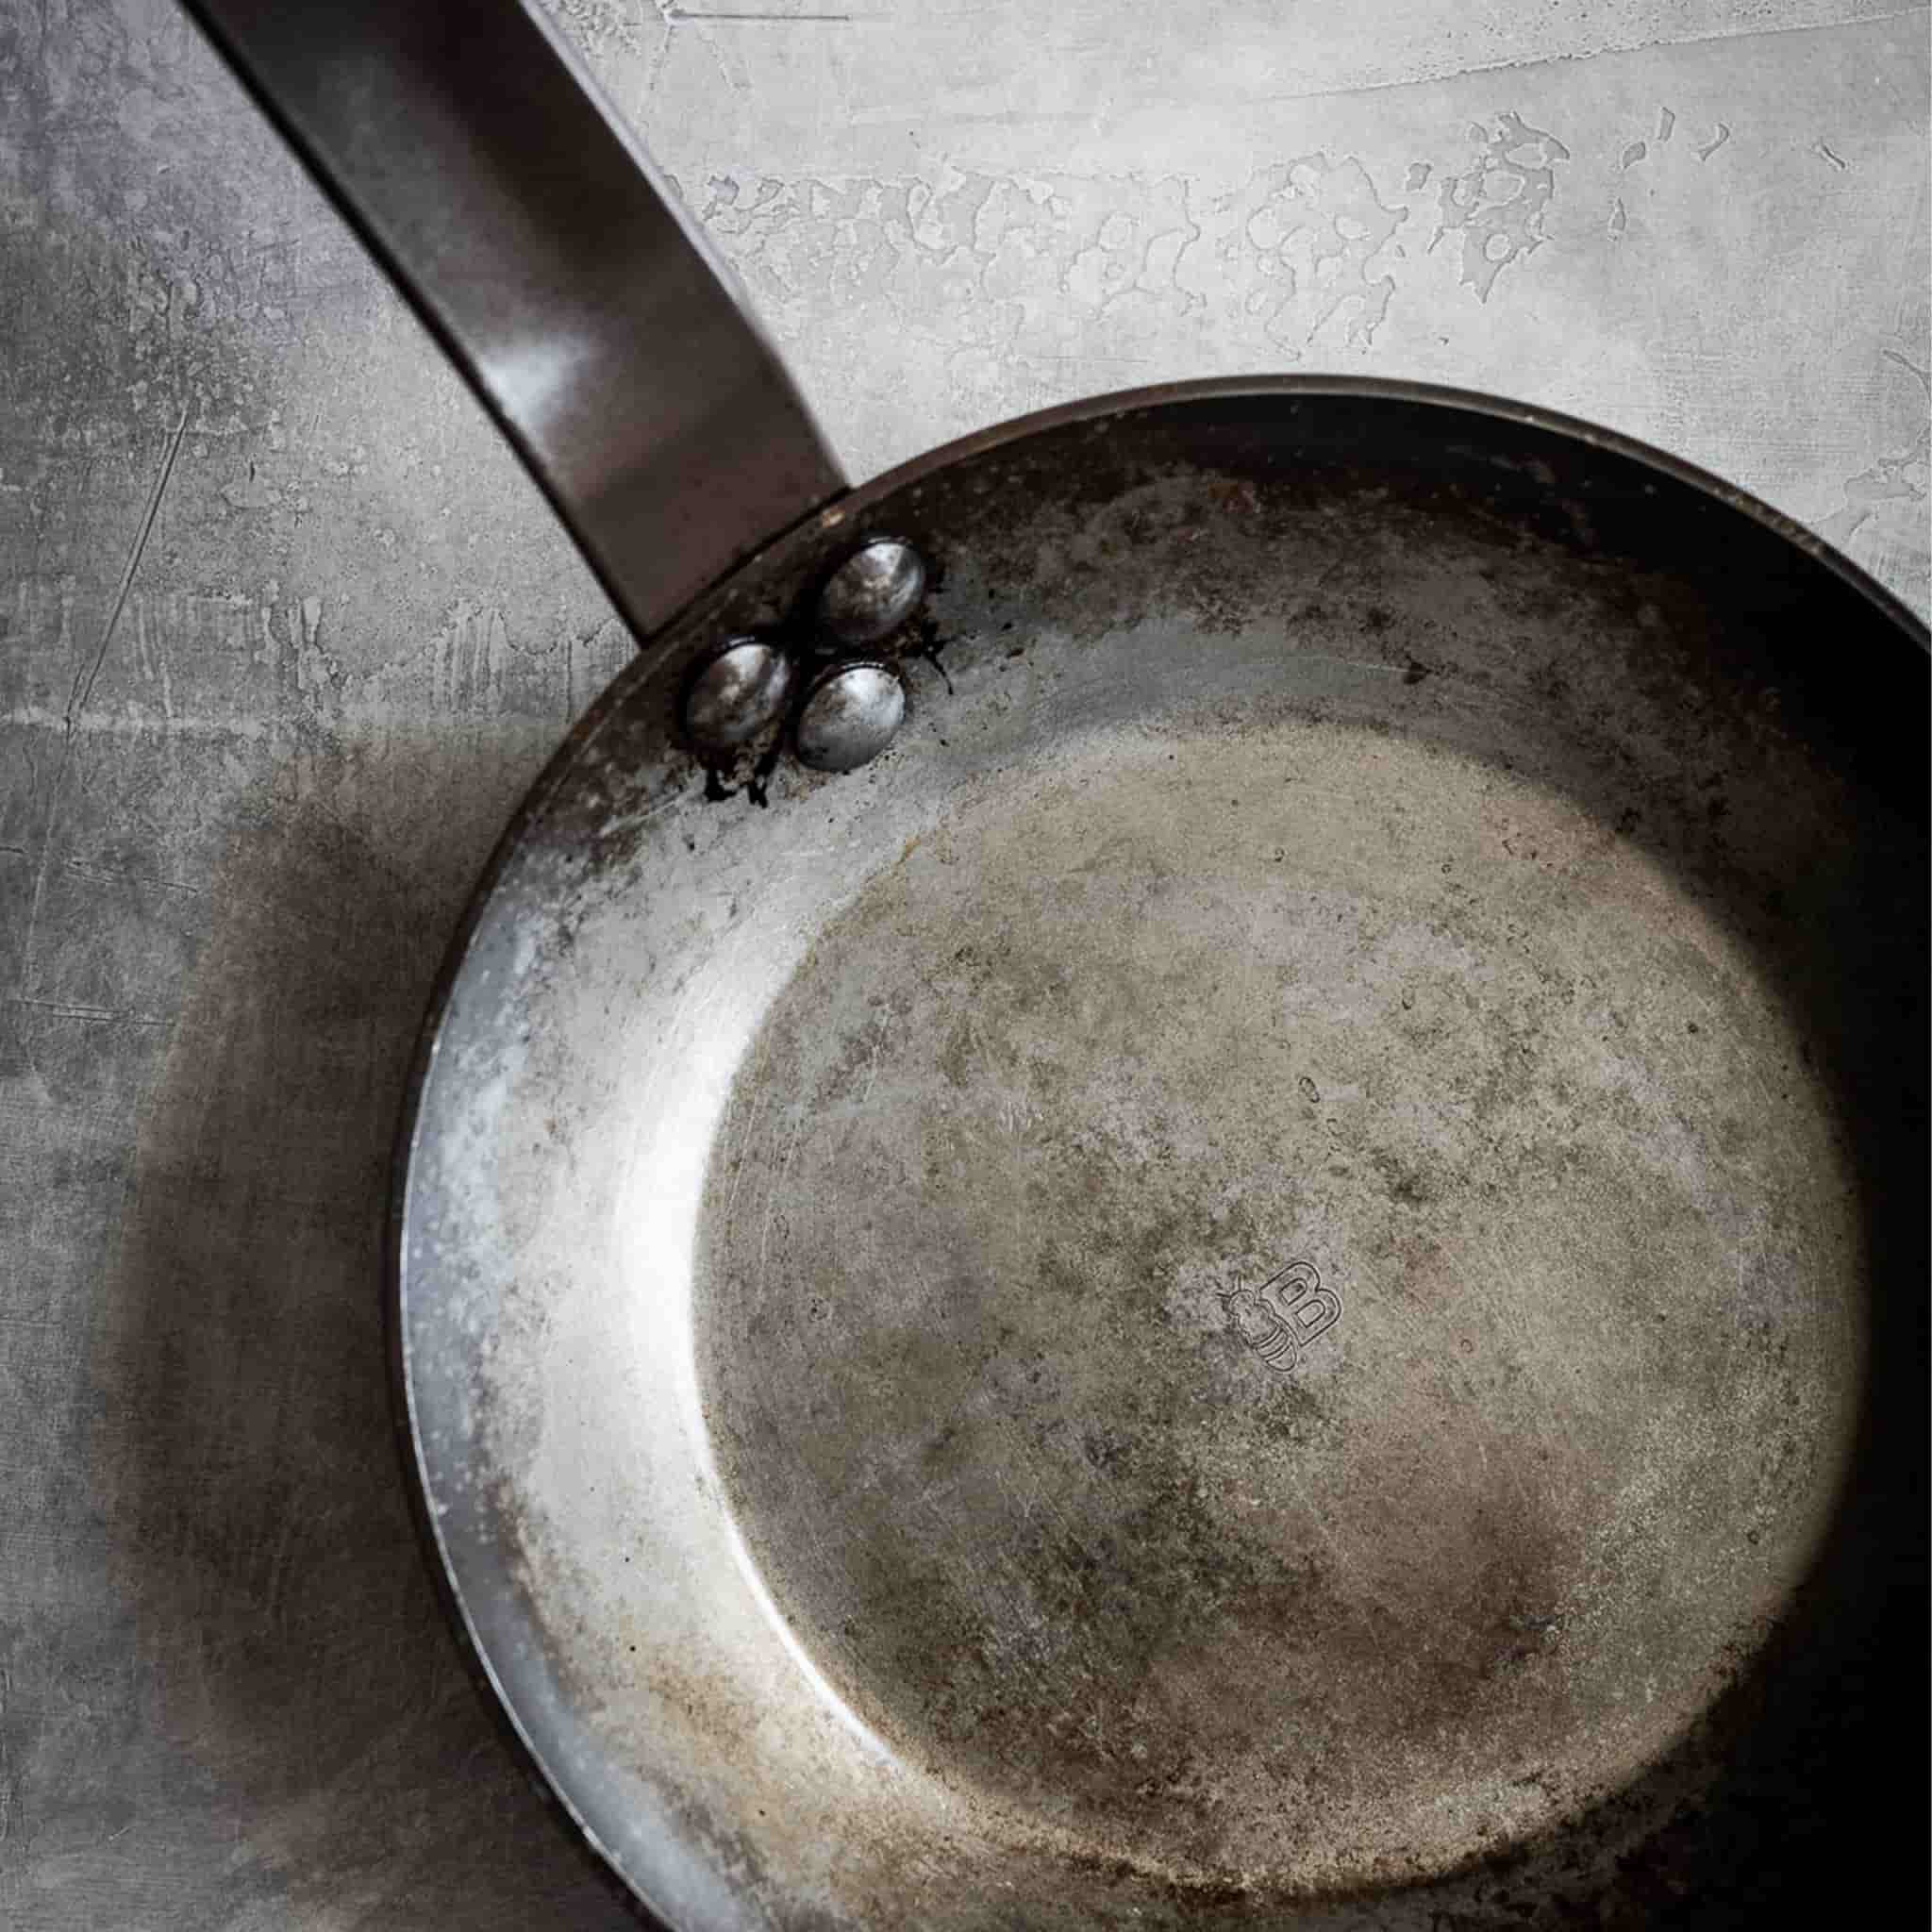 De Buyer Carbone Plus Frying Pan With Iron Handle